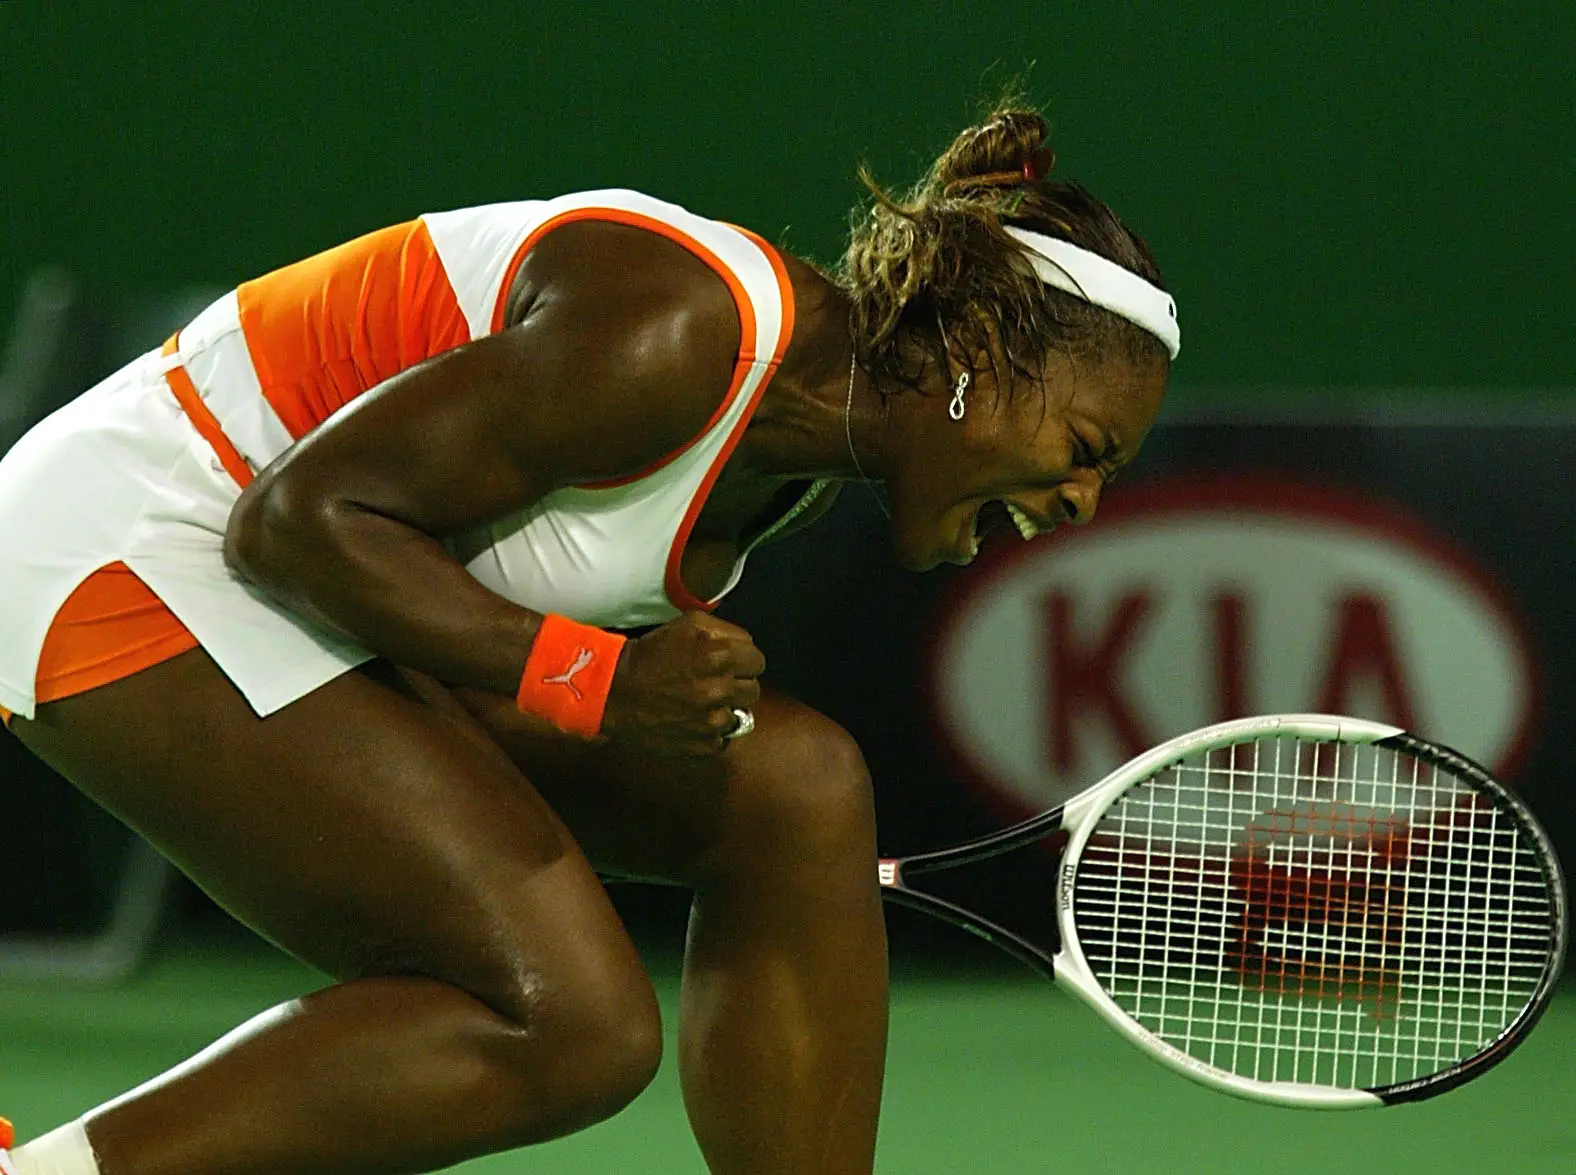 2003: A tenista Serena Williams conquista o Open da Austrália, somando o último troféu que lhe faltava para o "Serena Slam": termo usado para definir as suas vitórias em simultâneo nos torneios Grand Slam Roland Garros, US Open, Australia Open e Wimbledon.